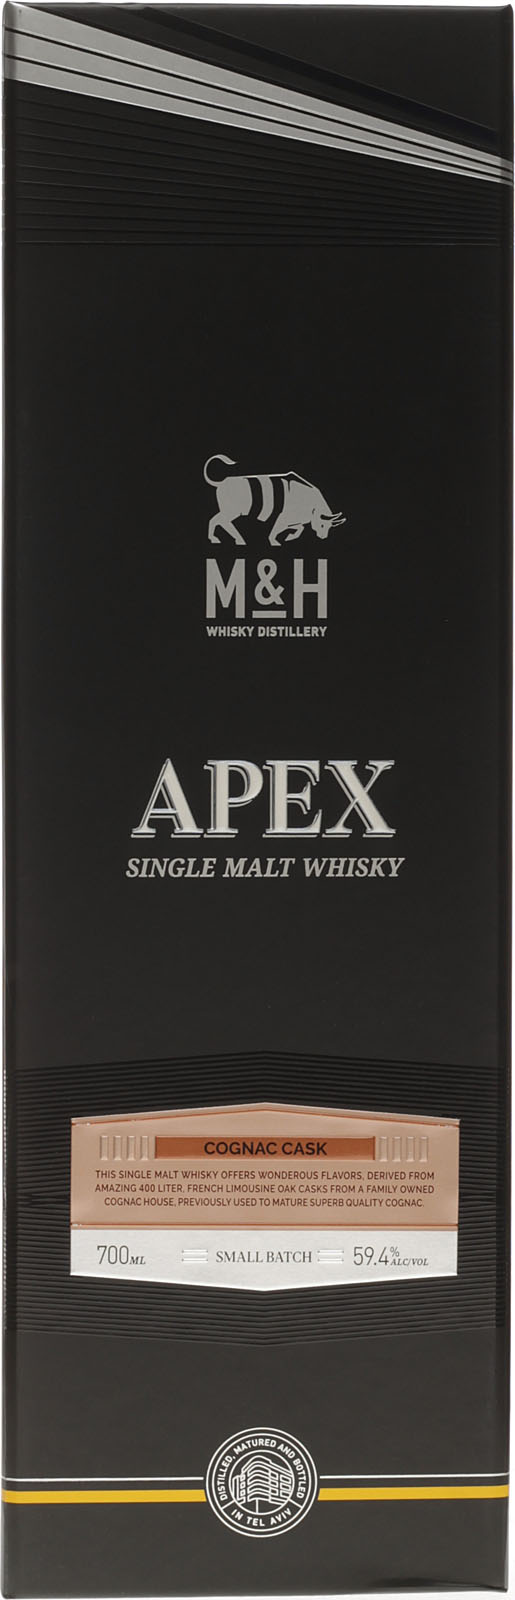 Apex - Cognac